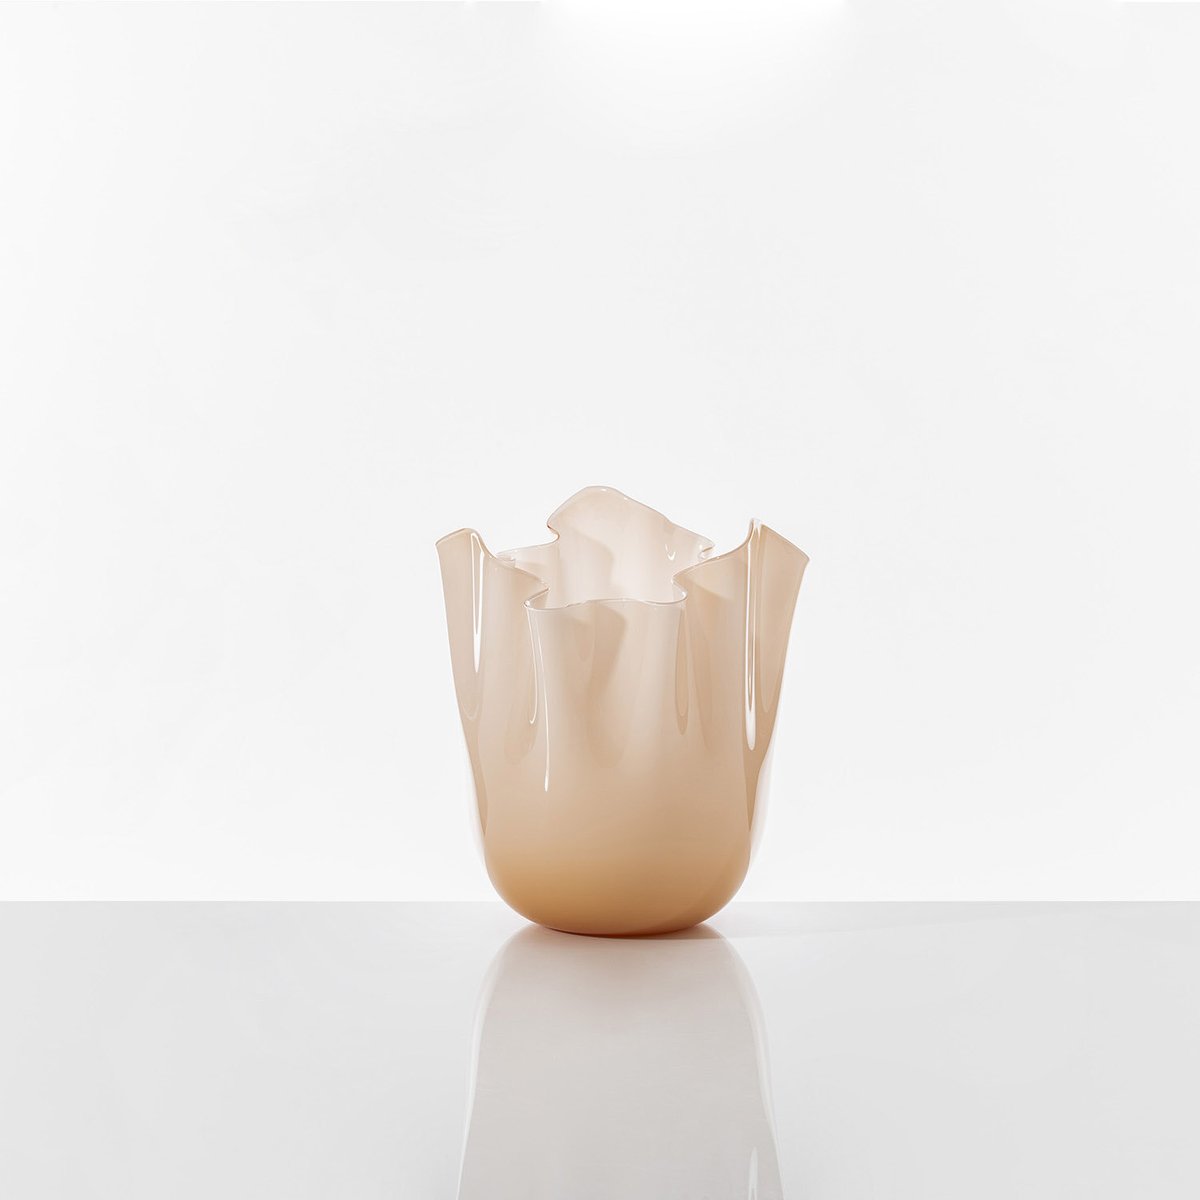 Fazzoletto vase in Pesca colour with opalino finish